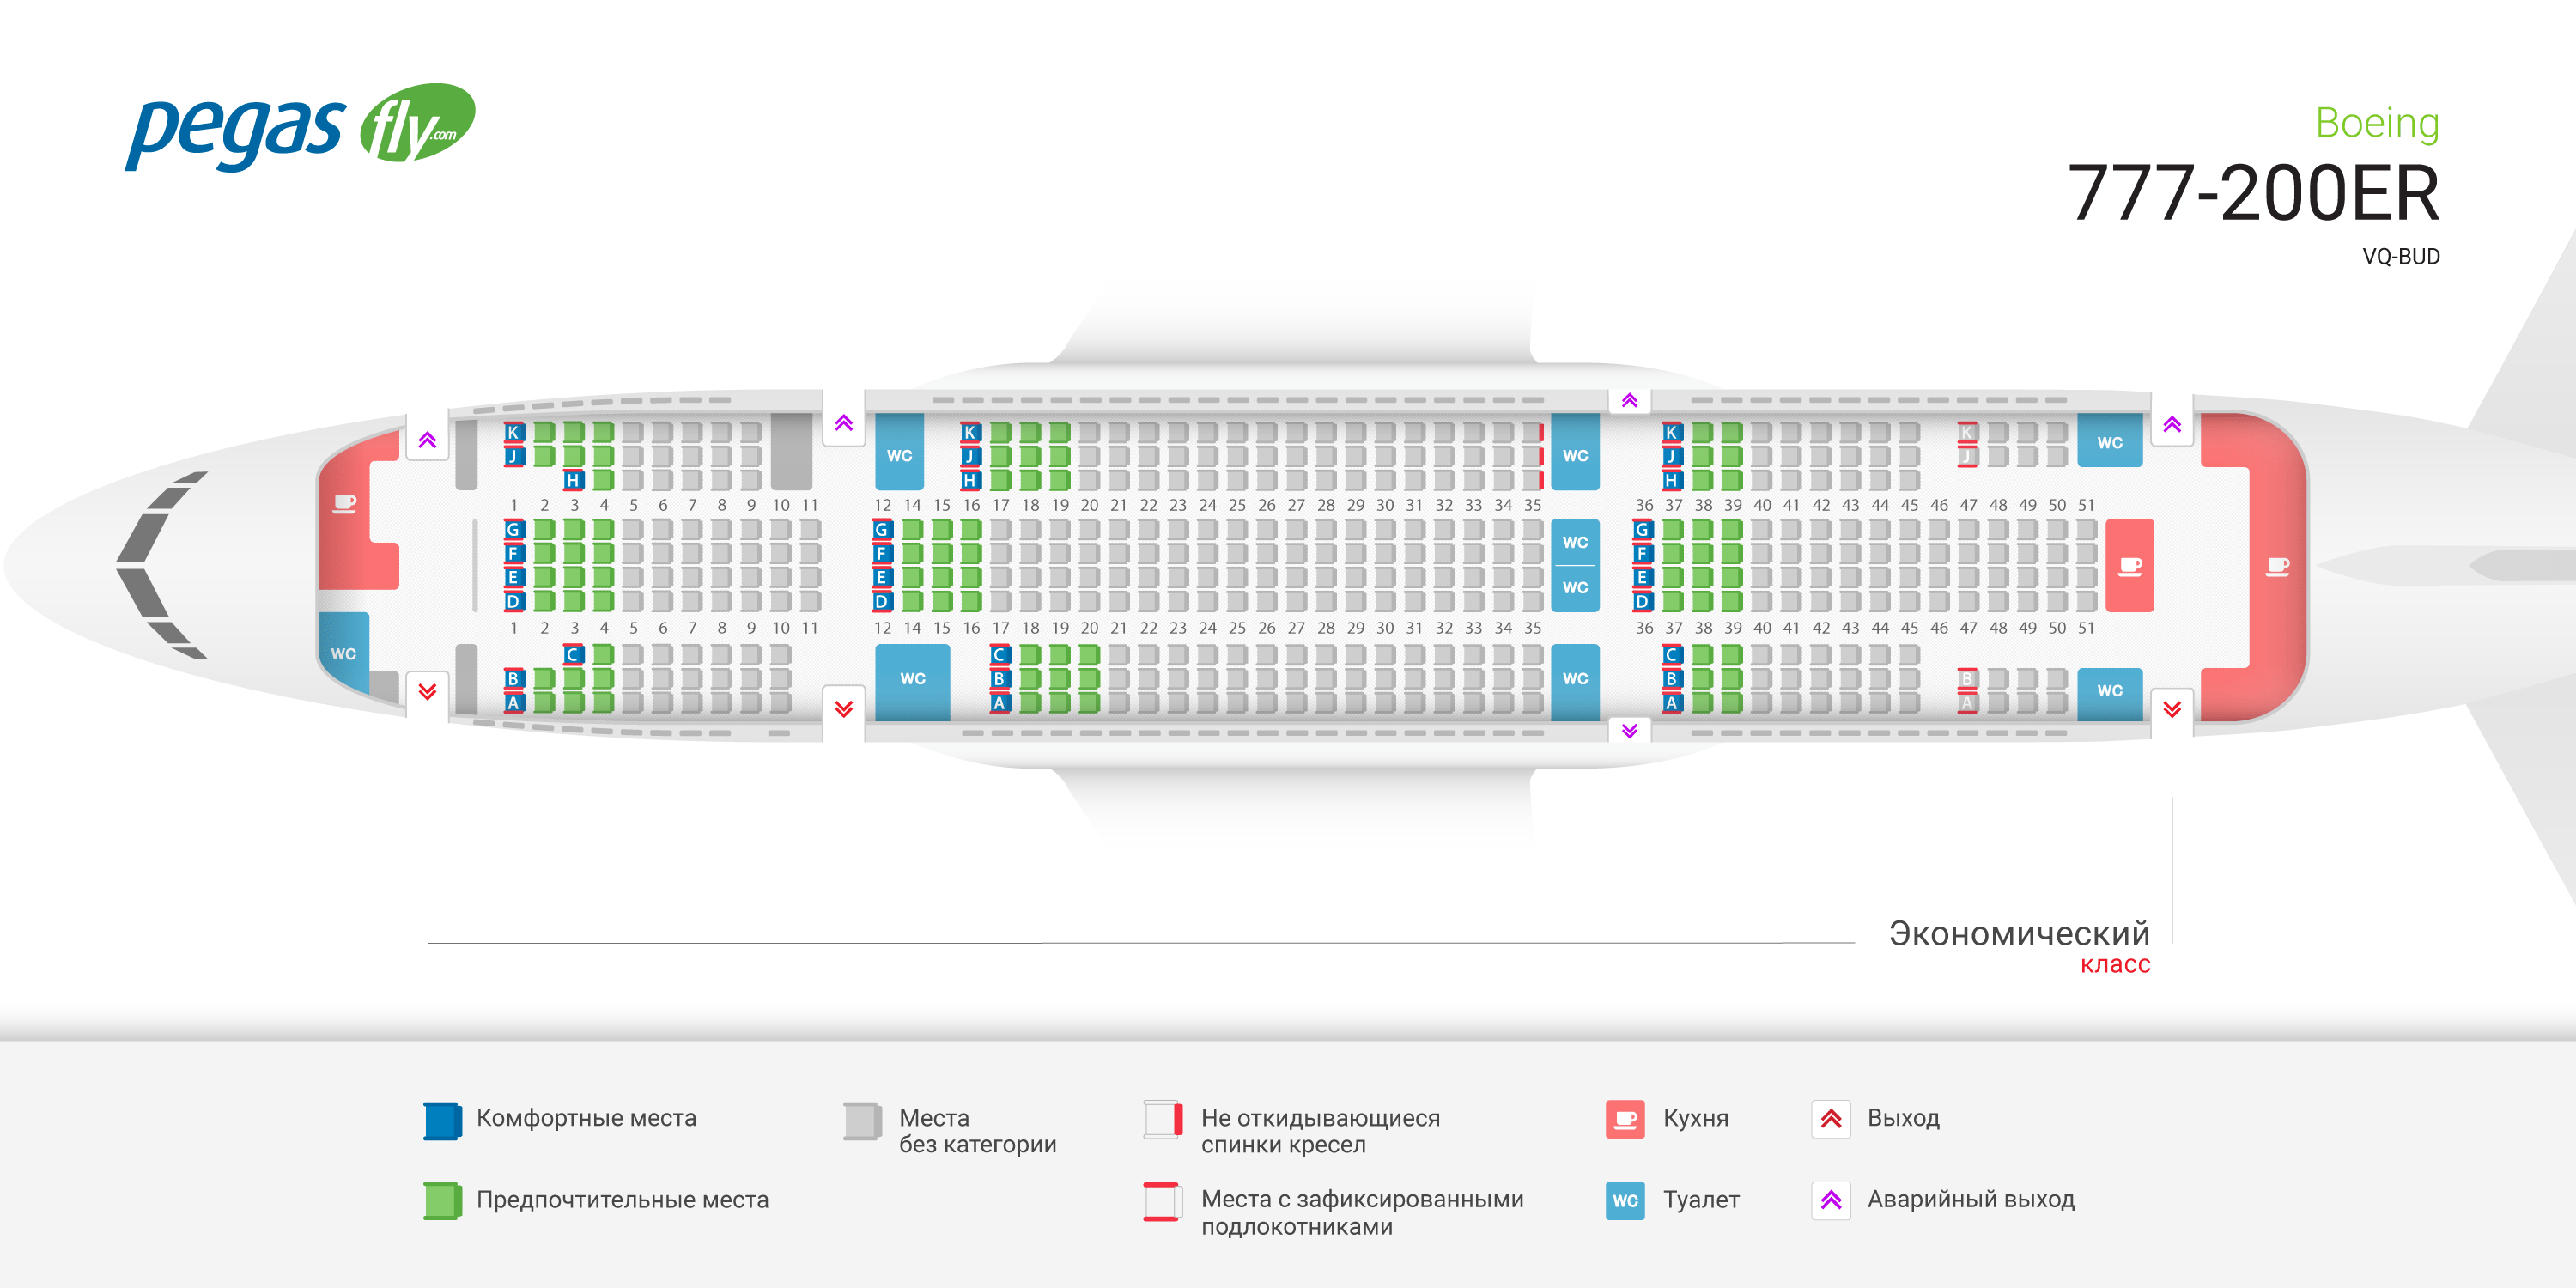 Boeing-777 - схема салона, модификации